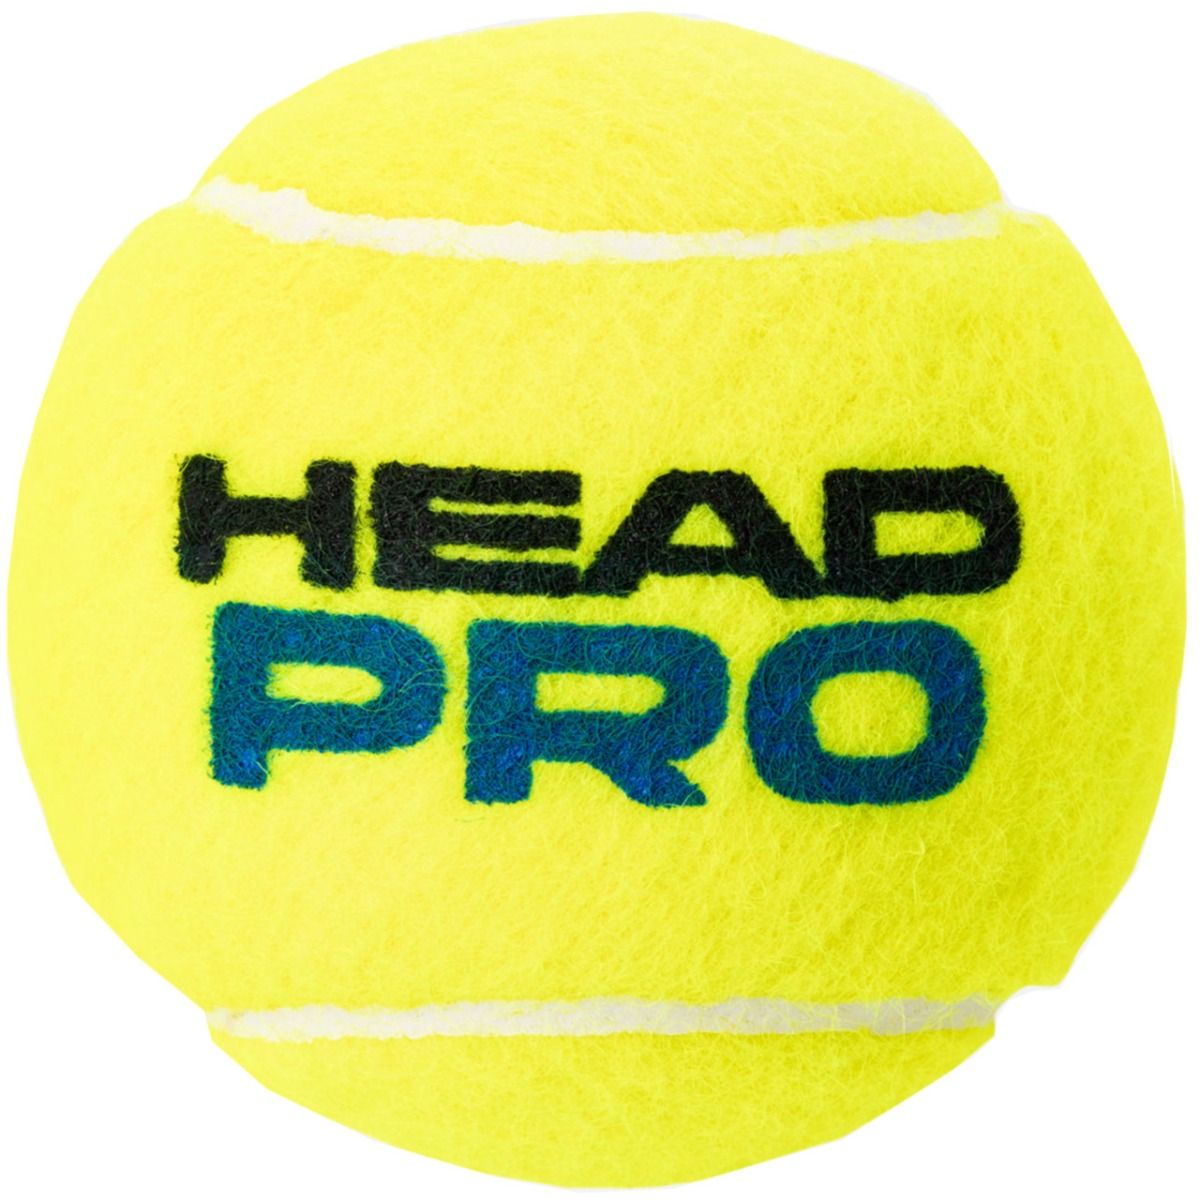 Head Tennisbälle Pro 3pcs